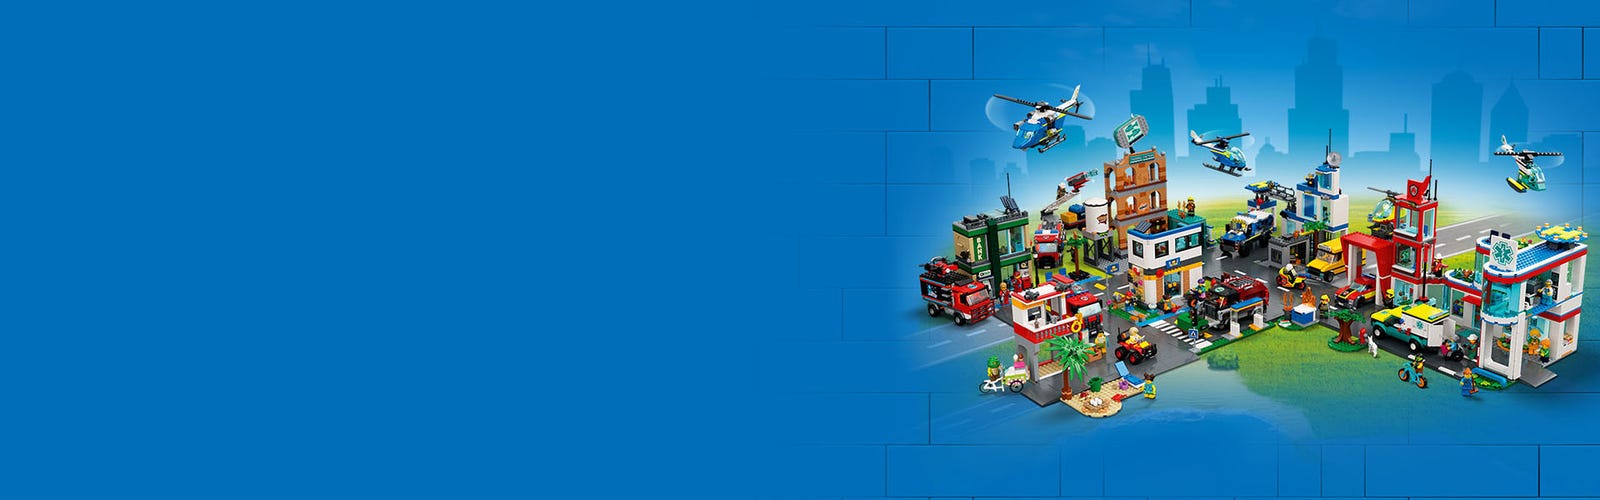 Lego 60329 city une journée d'école jouet de construction bus 2 classes et  plaques de route set pour enfants +6 ans - La Poste